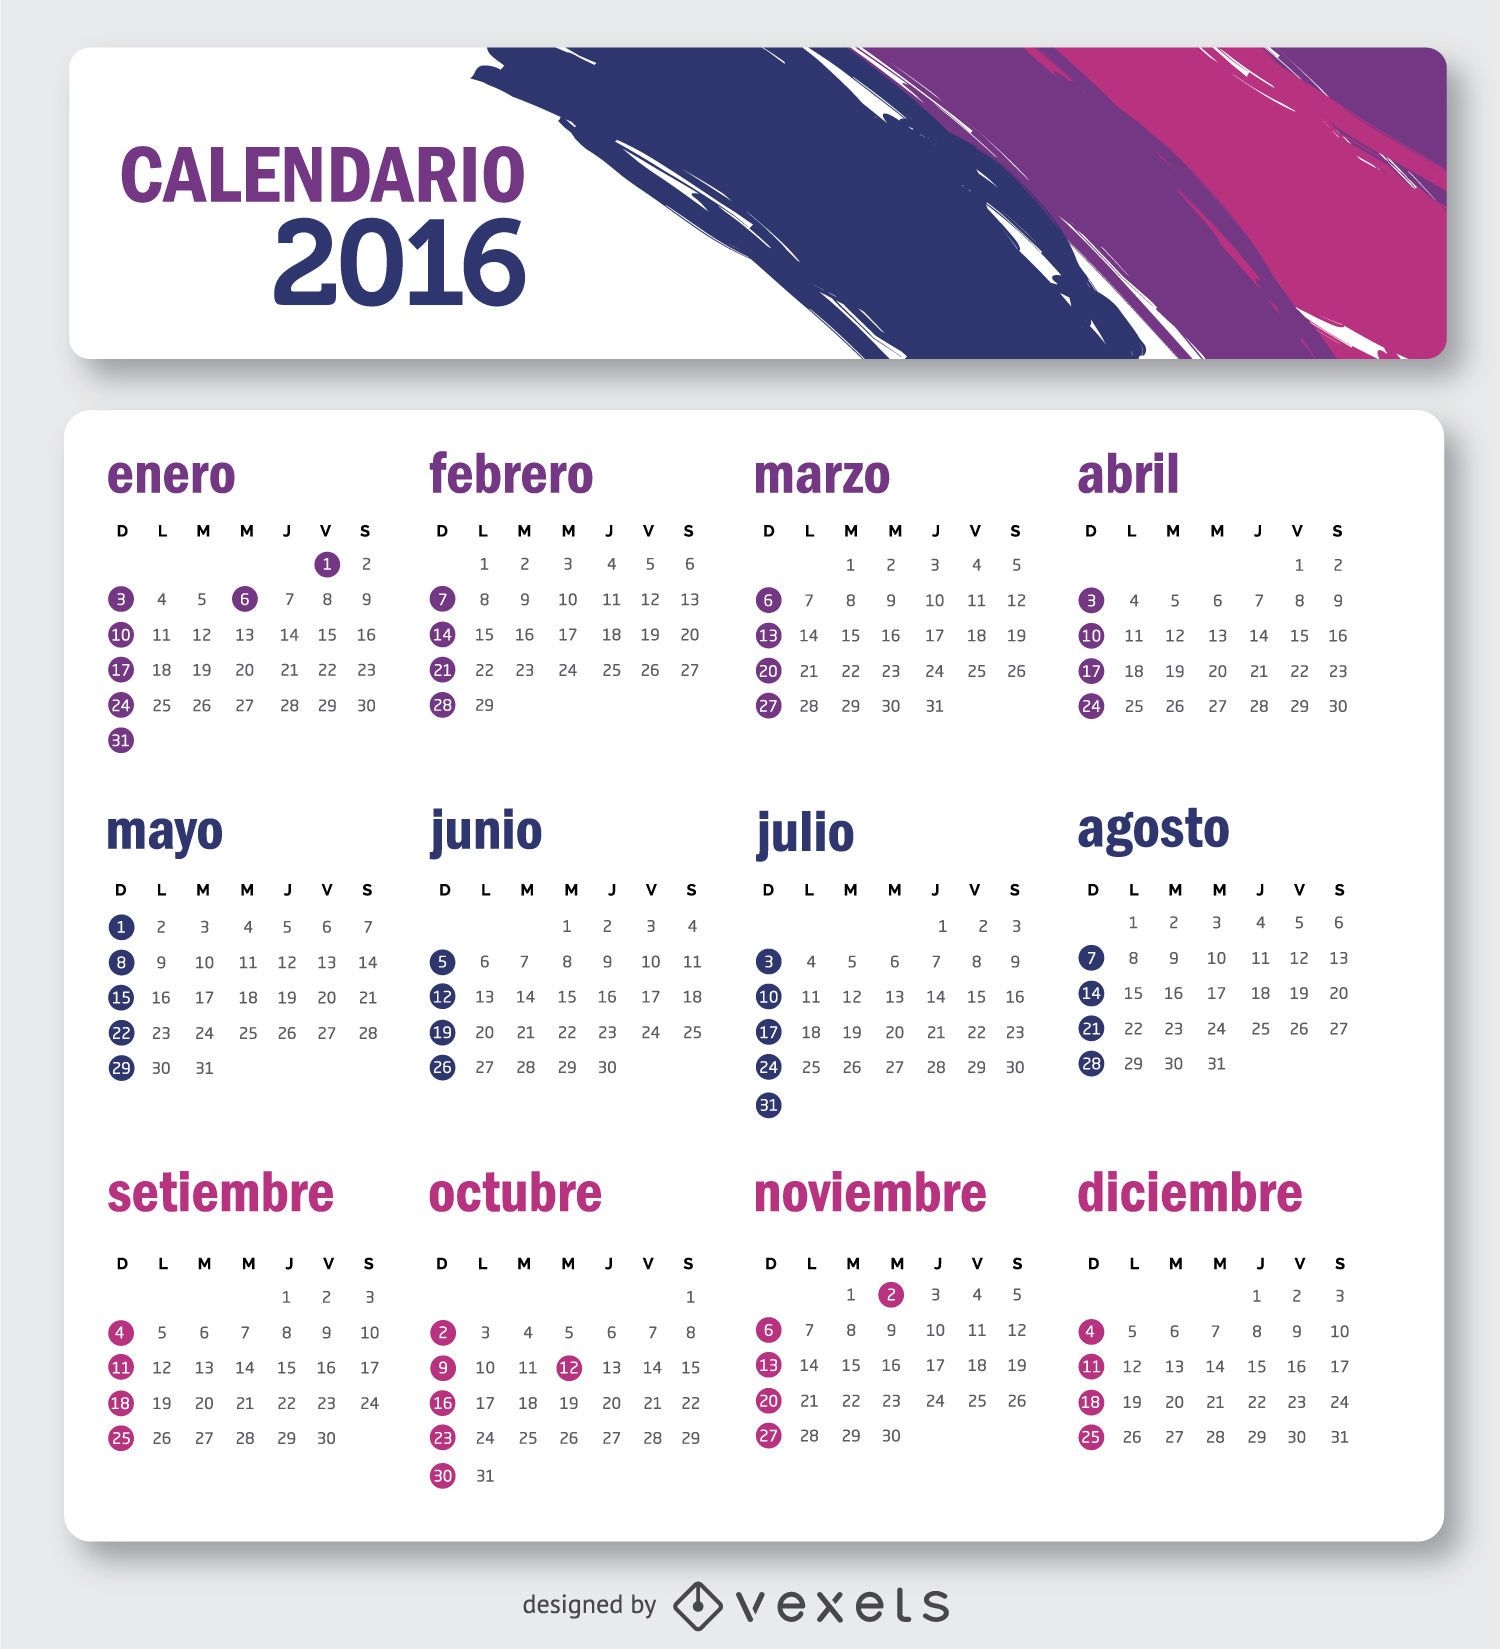 Calendário 2016 simples em espanhol